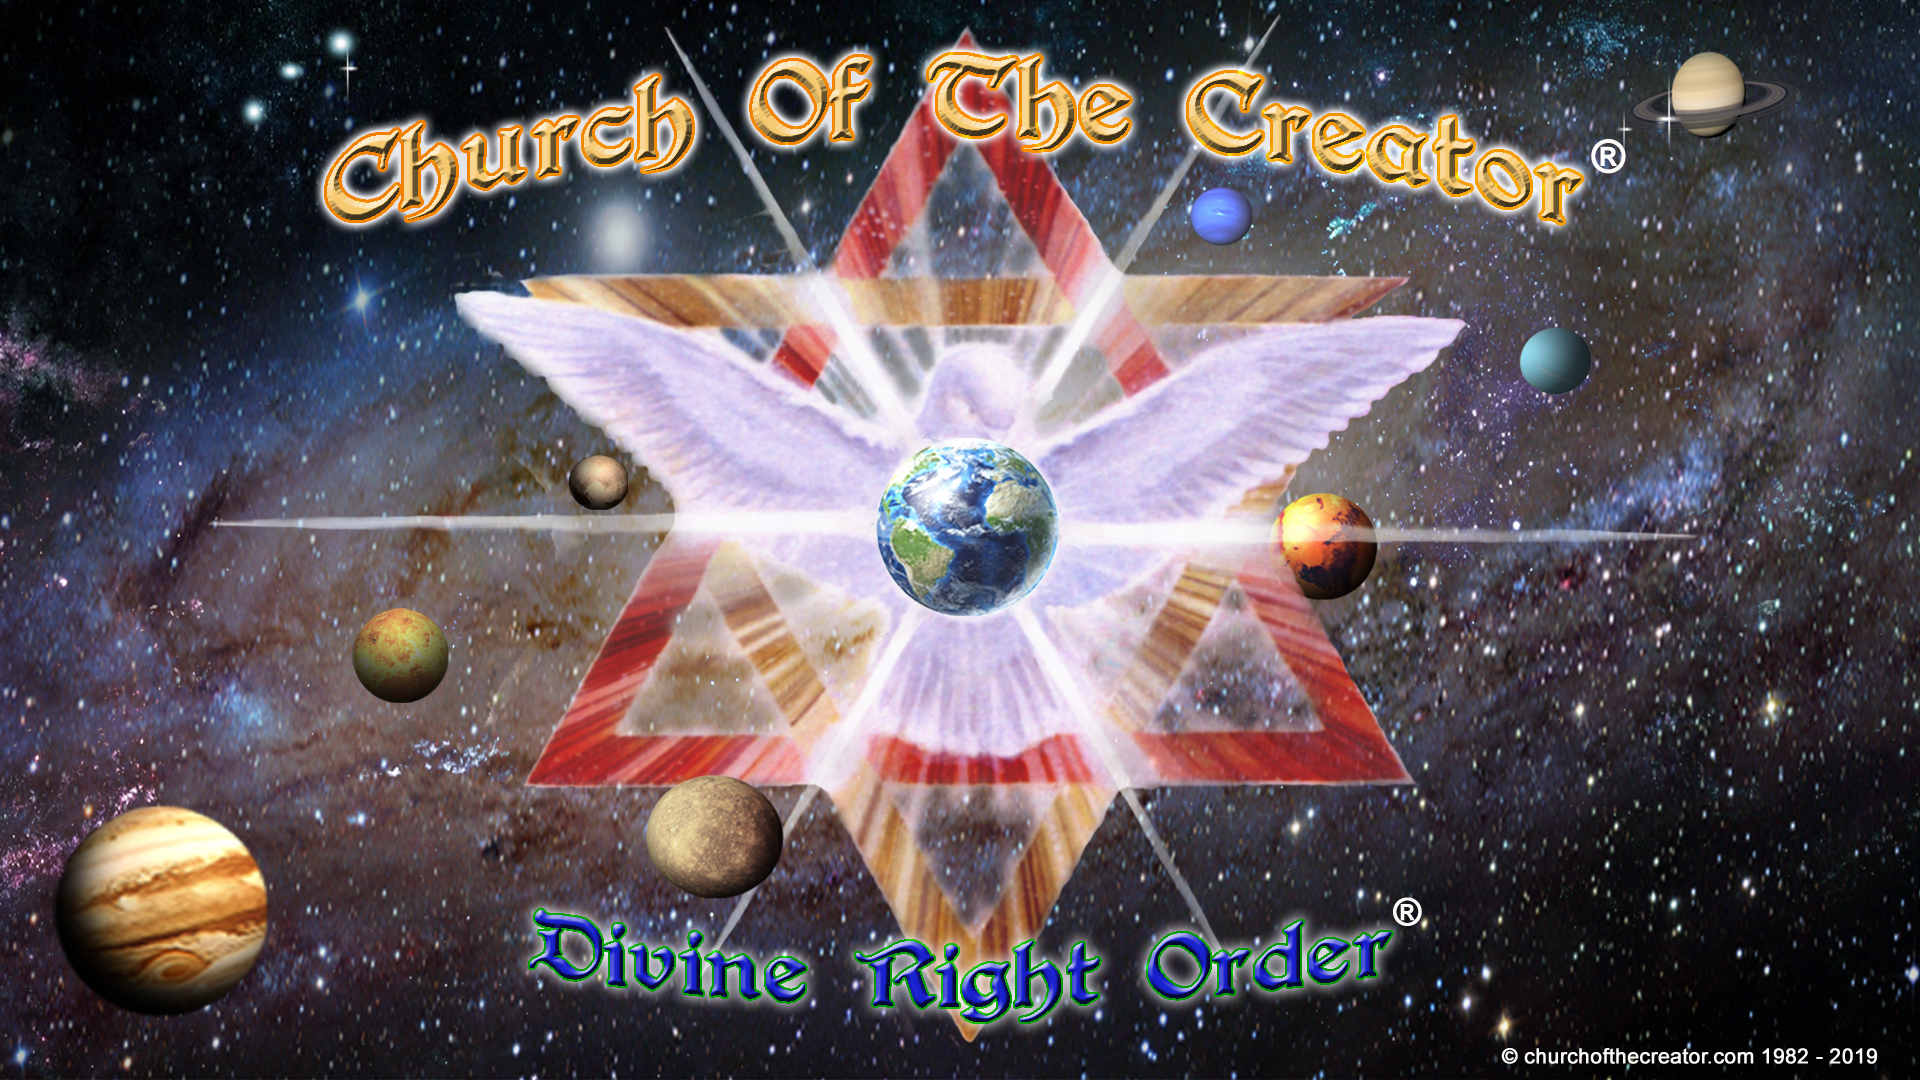 Church Of The Creator Divine Right Order 300dpi wallpaper